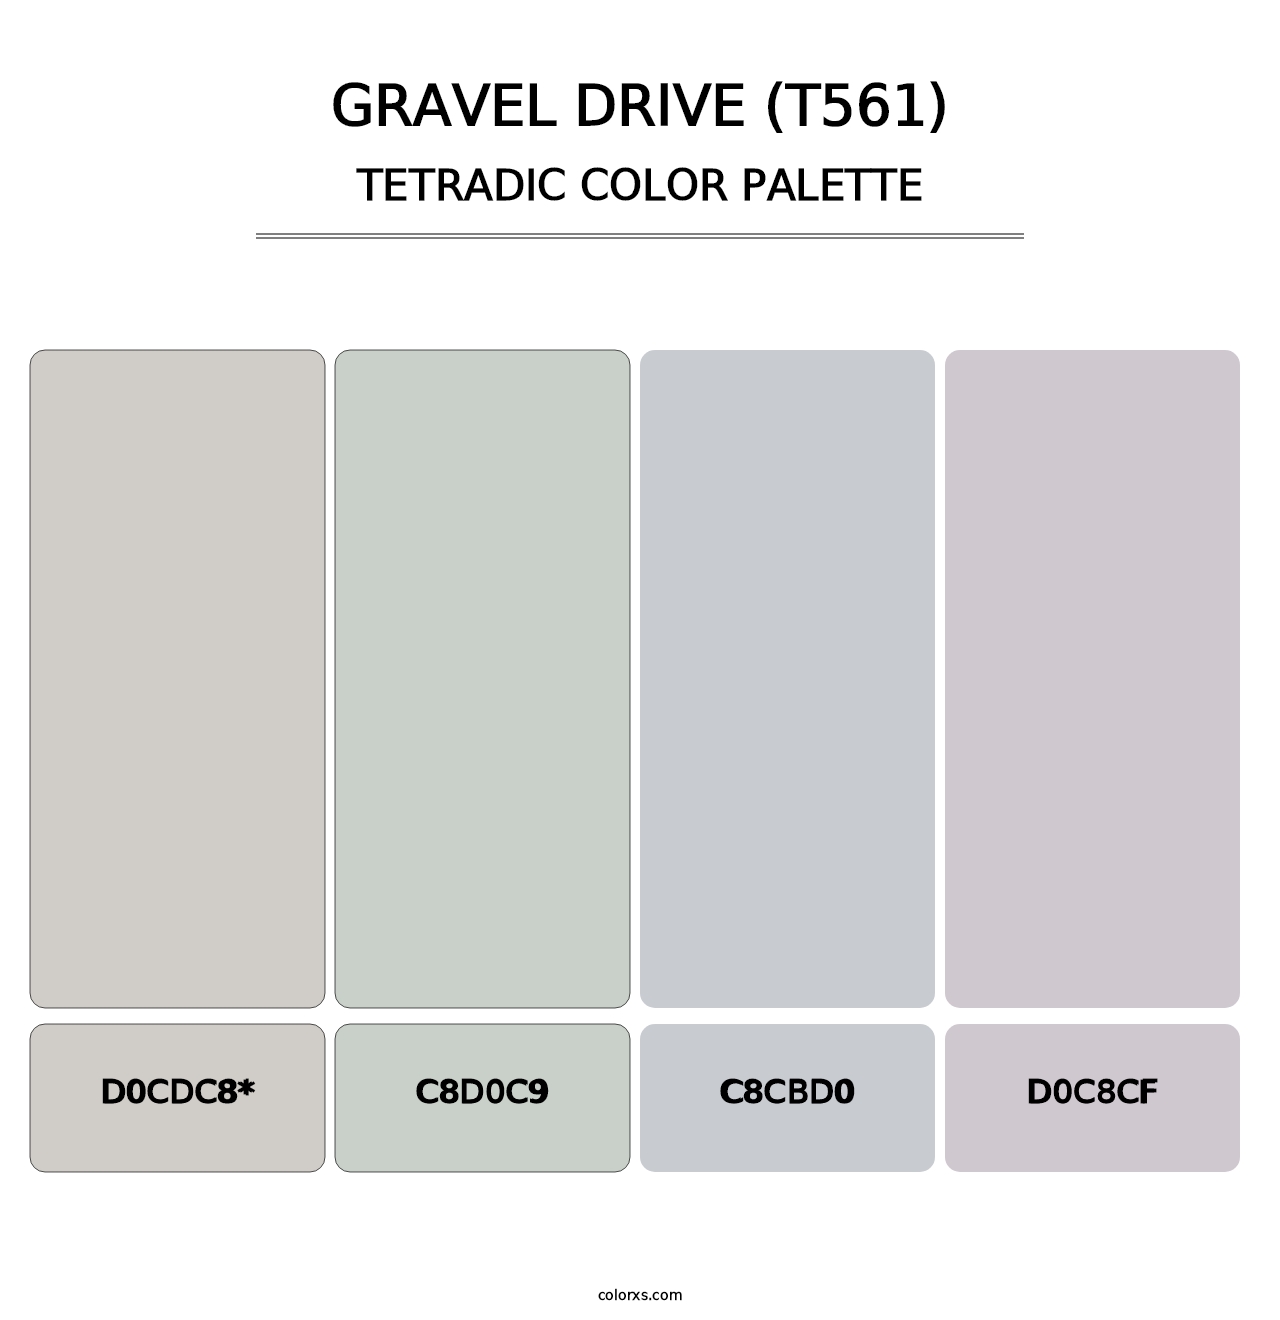 Gravel Drive (T561) - Tetradic Color Palette